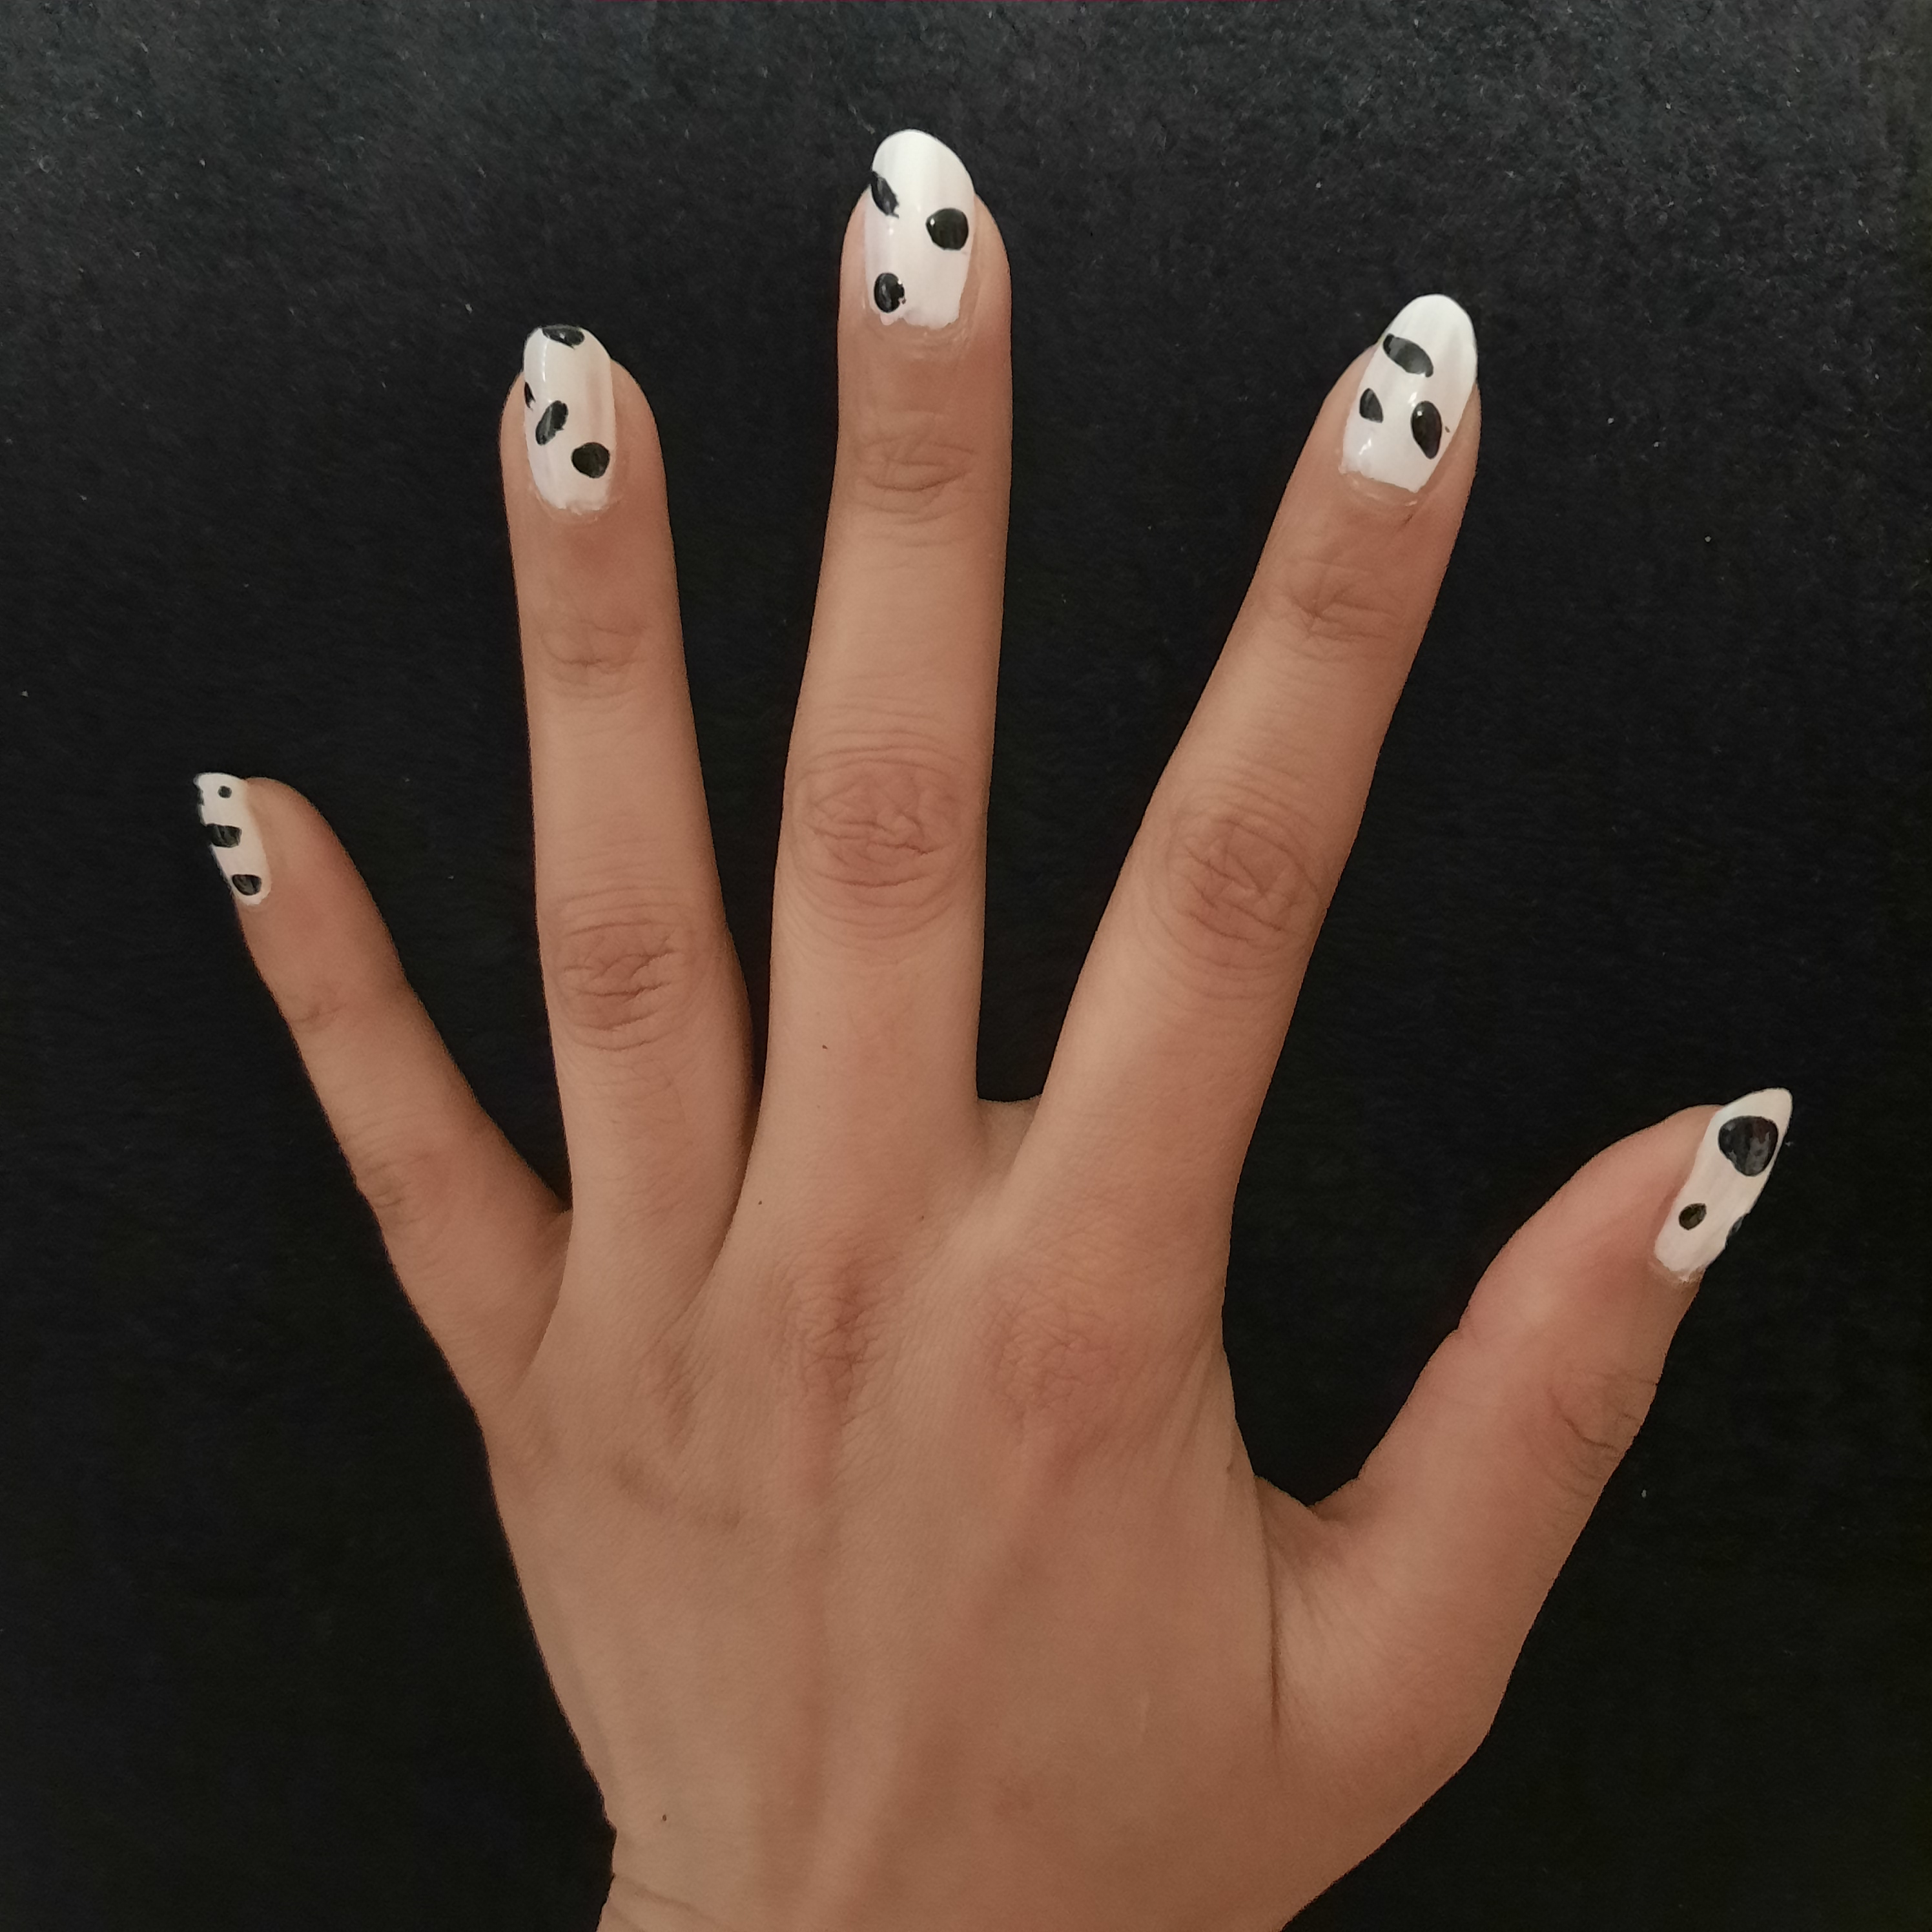 Cow print nails | Cow nails, Short acrylic nails, Cute gel nails